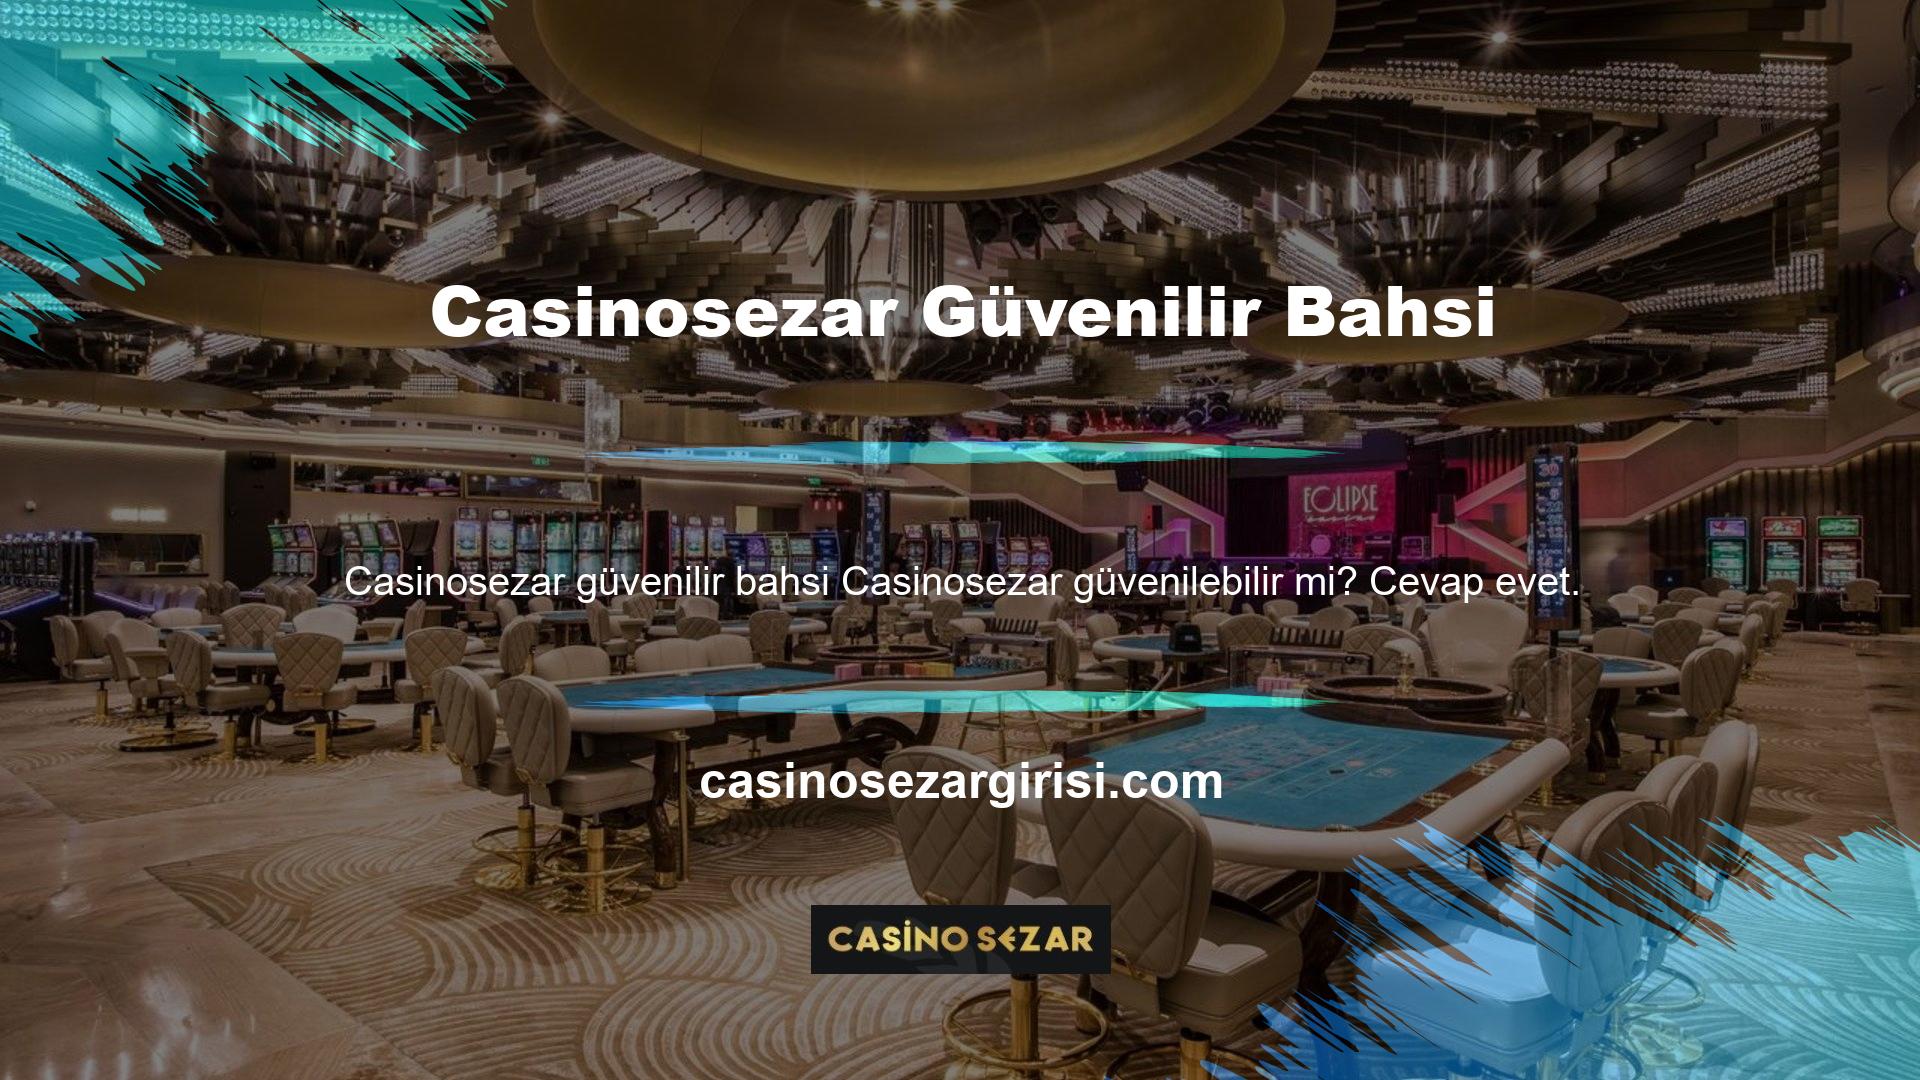 Casinosezar, Avrupa'nın en güvenilir bahis sitelerinden biridir ve finansal araçlar kullanır